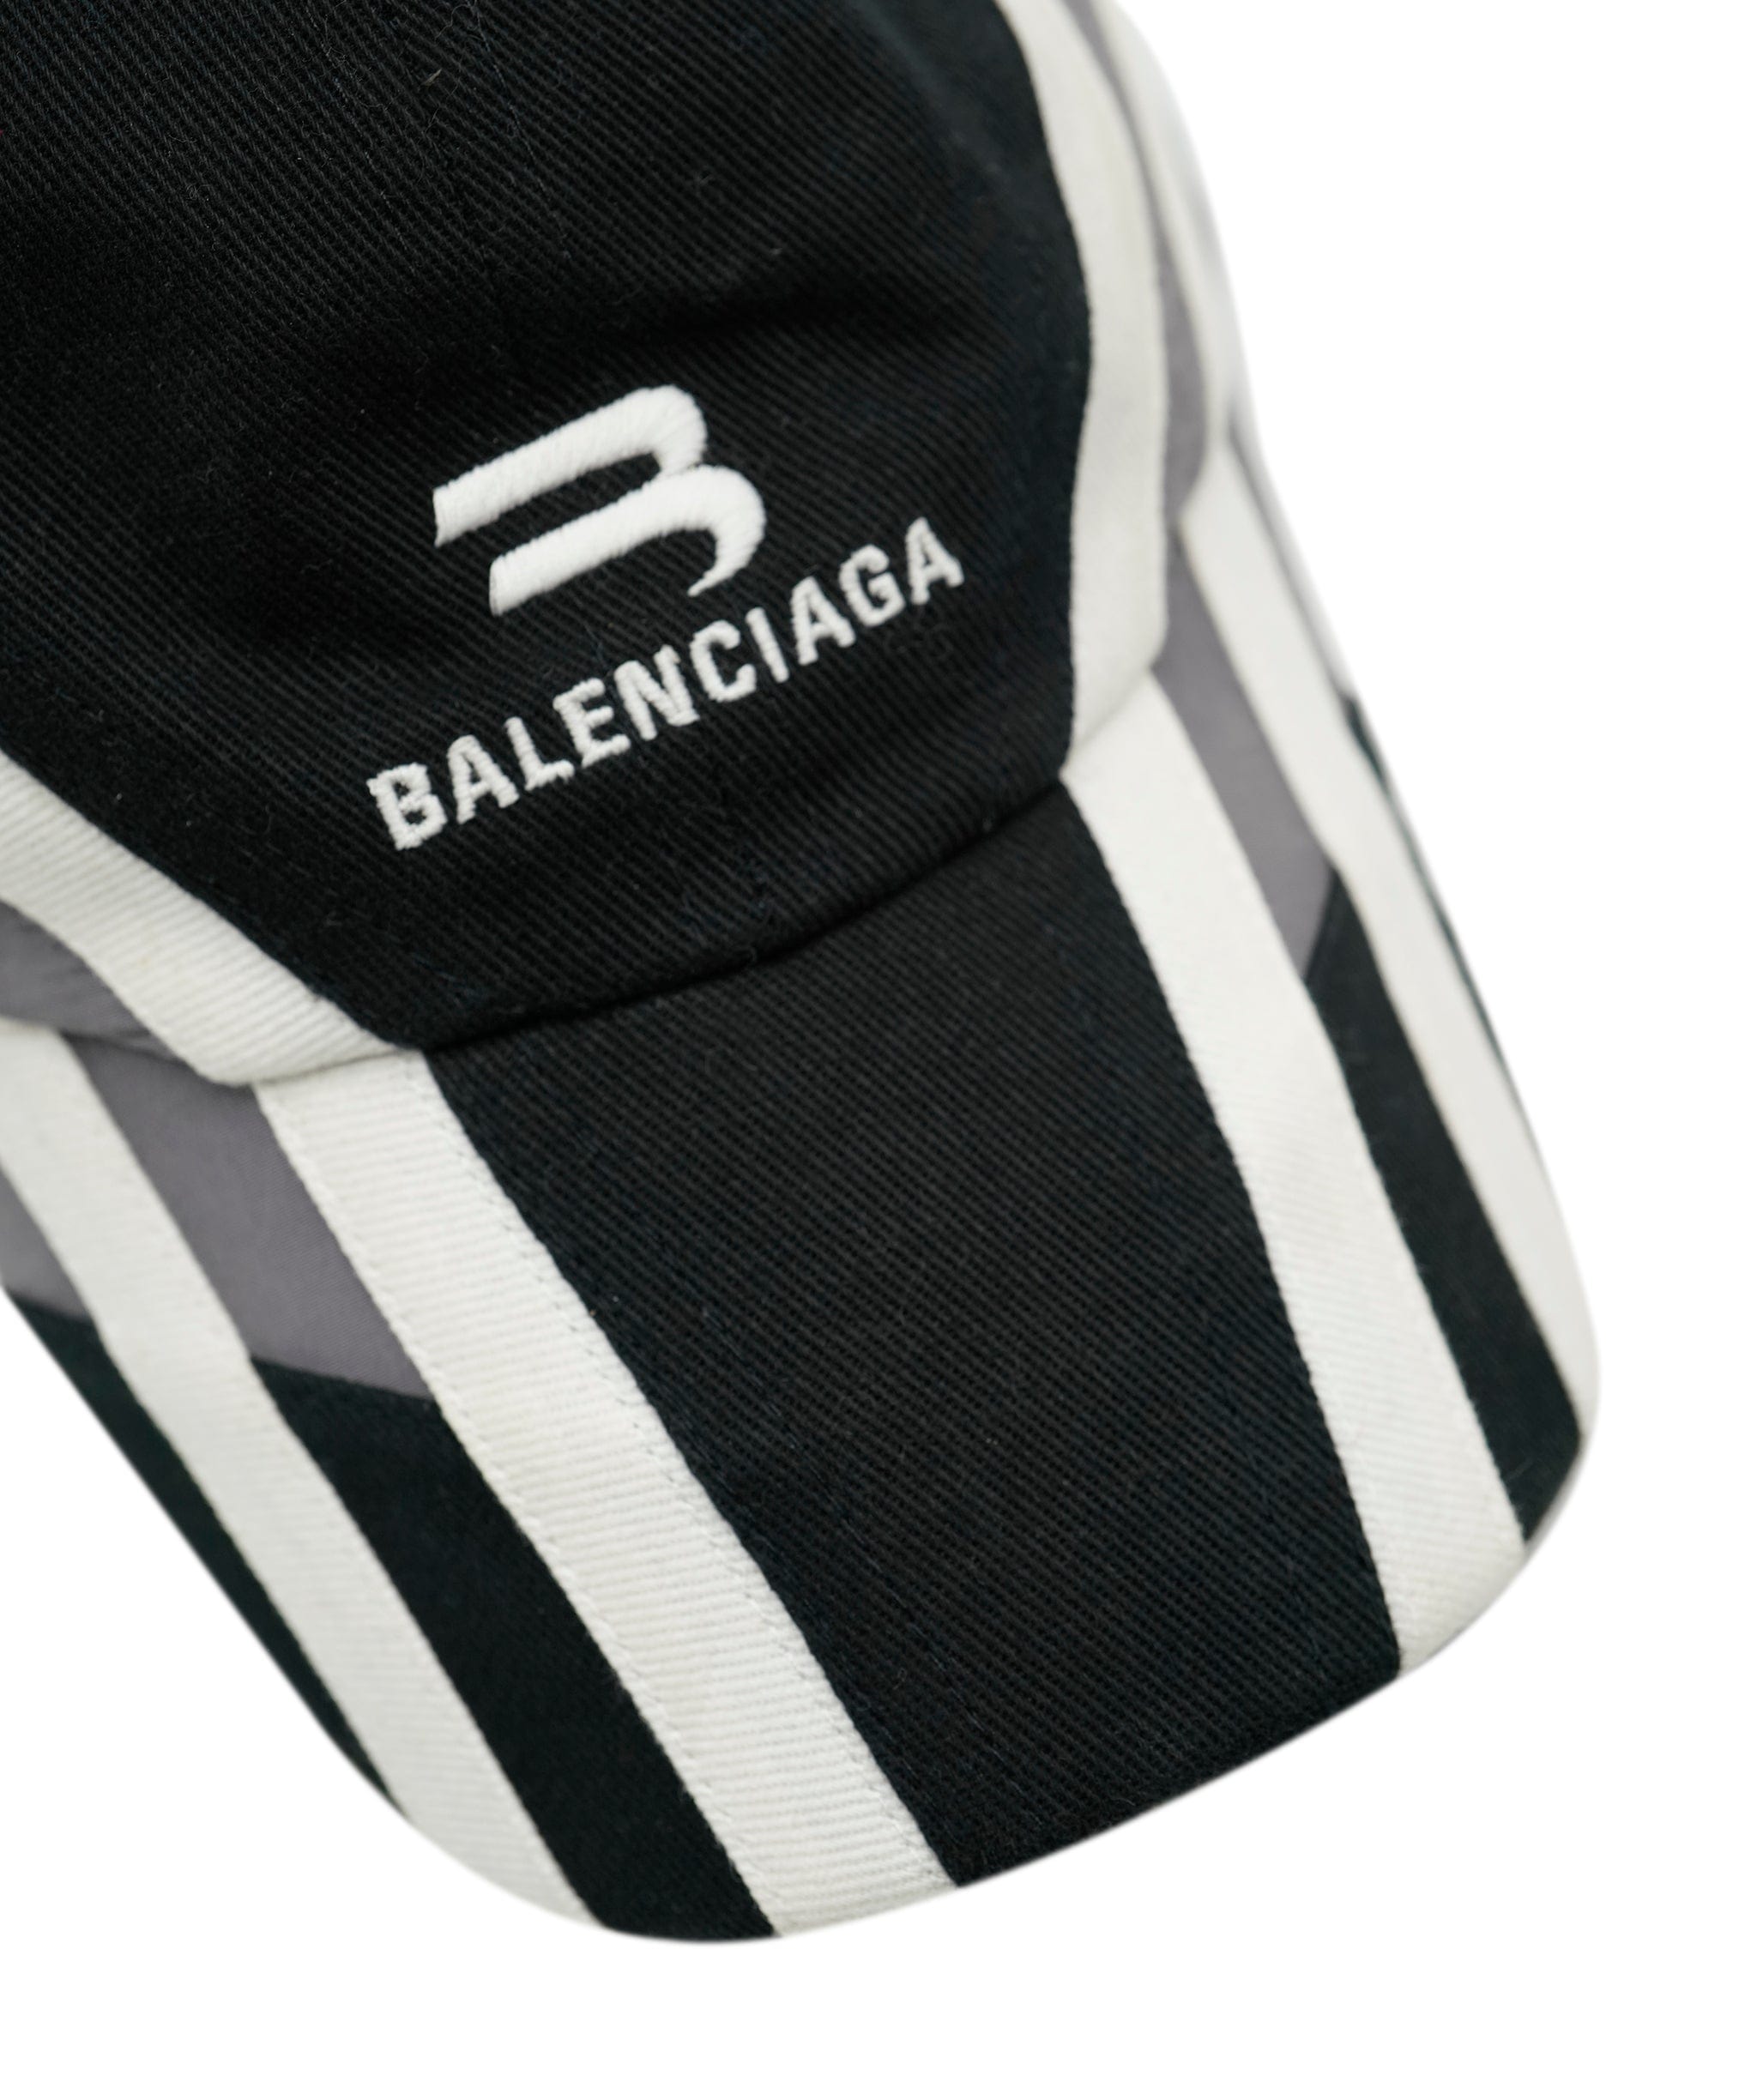 Balenciaga Balenciaga Women's Silk Accessories ASL5655